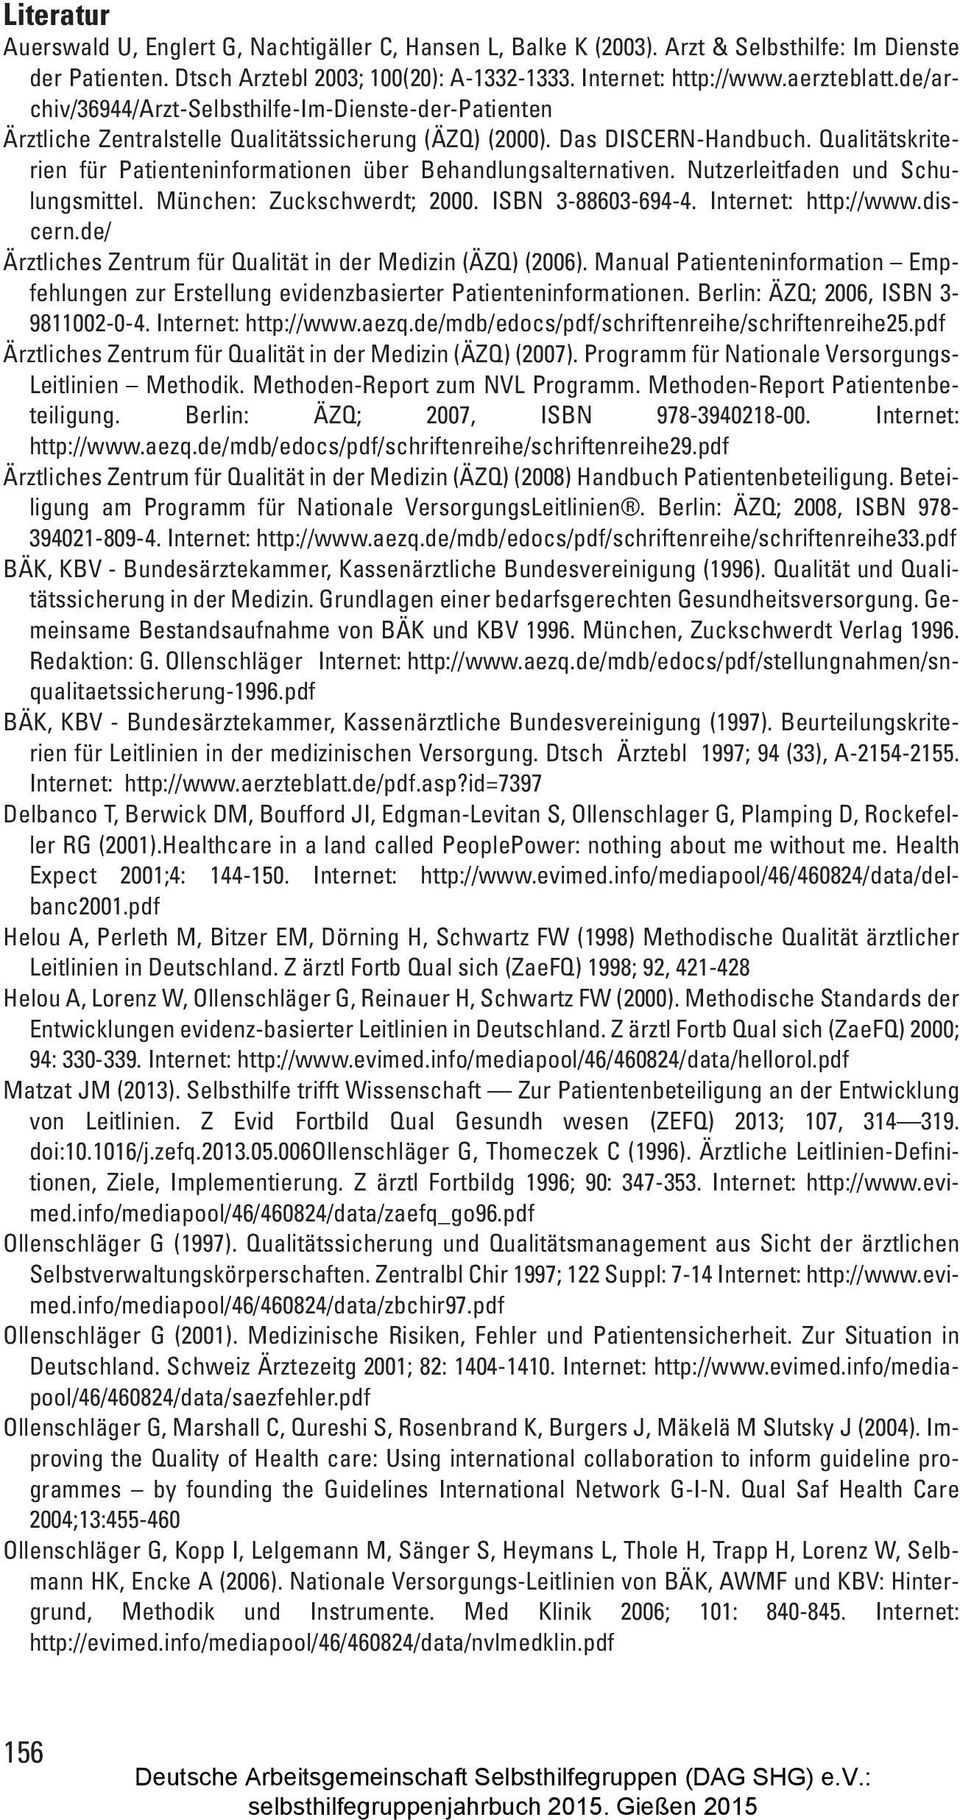 Qualitätskriterien für Patienteninformationen über Behandlungsalternativen. Nutzerleitfaden und Schulungsmittel. München: Zuckschwerdt; 2000. ISBN 3-88603-694-4. Internet: http://www.discern.